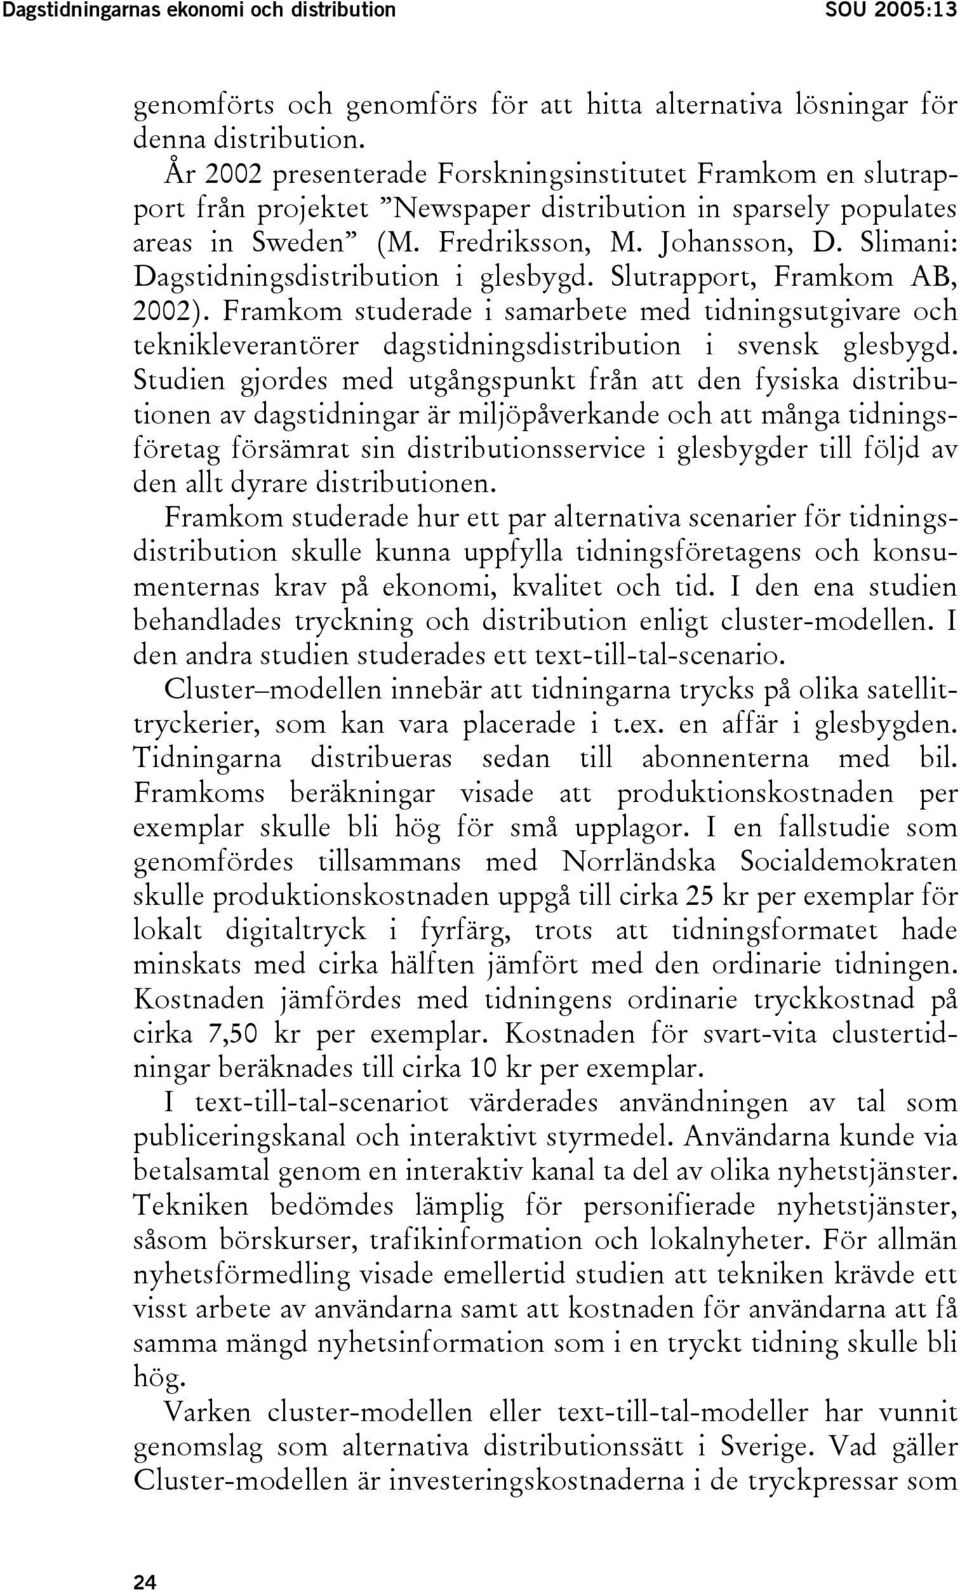 Slimani: Dagstidningsdistribution i glesbygd. Slutrapport, Framkom AB, 2002). Framkom studerade i samarbete med tidningsutgivare och teknikleverantörer dagstidningsdistribution i svensk glesbygd.